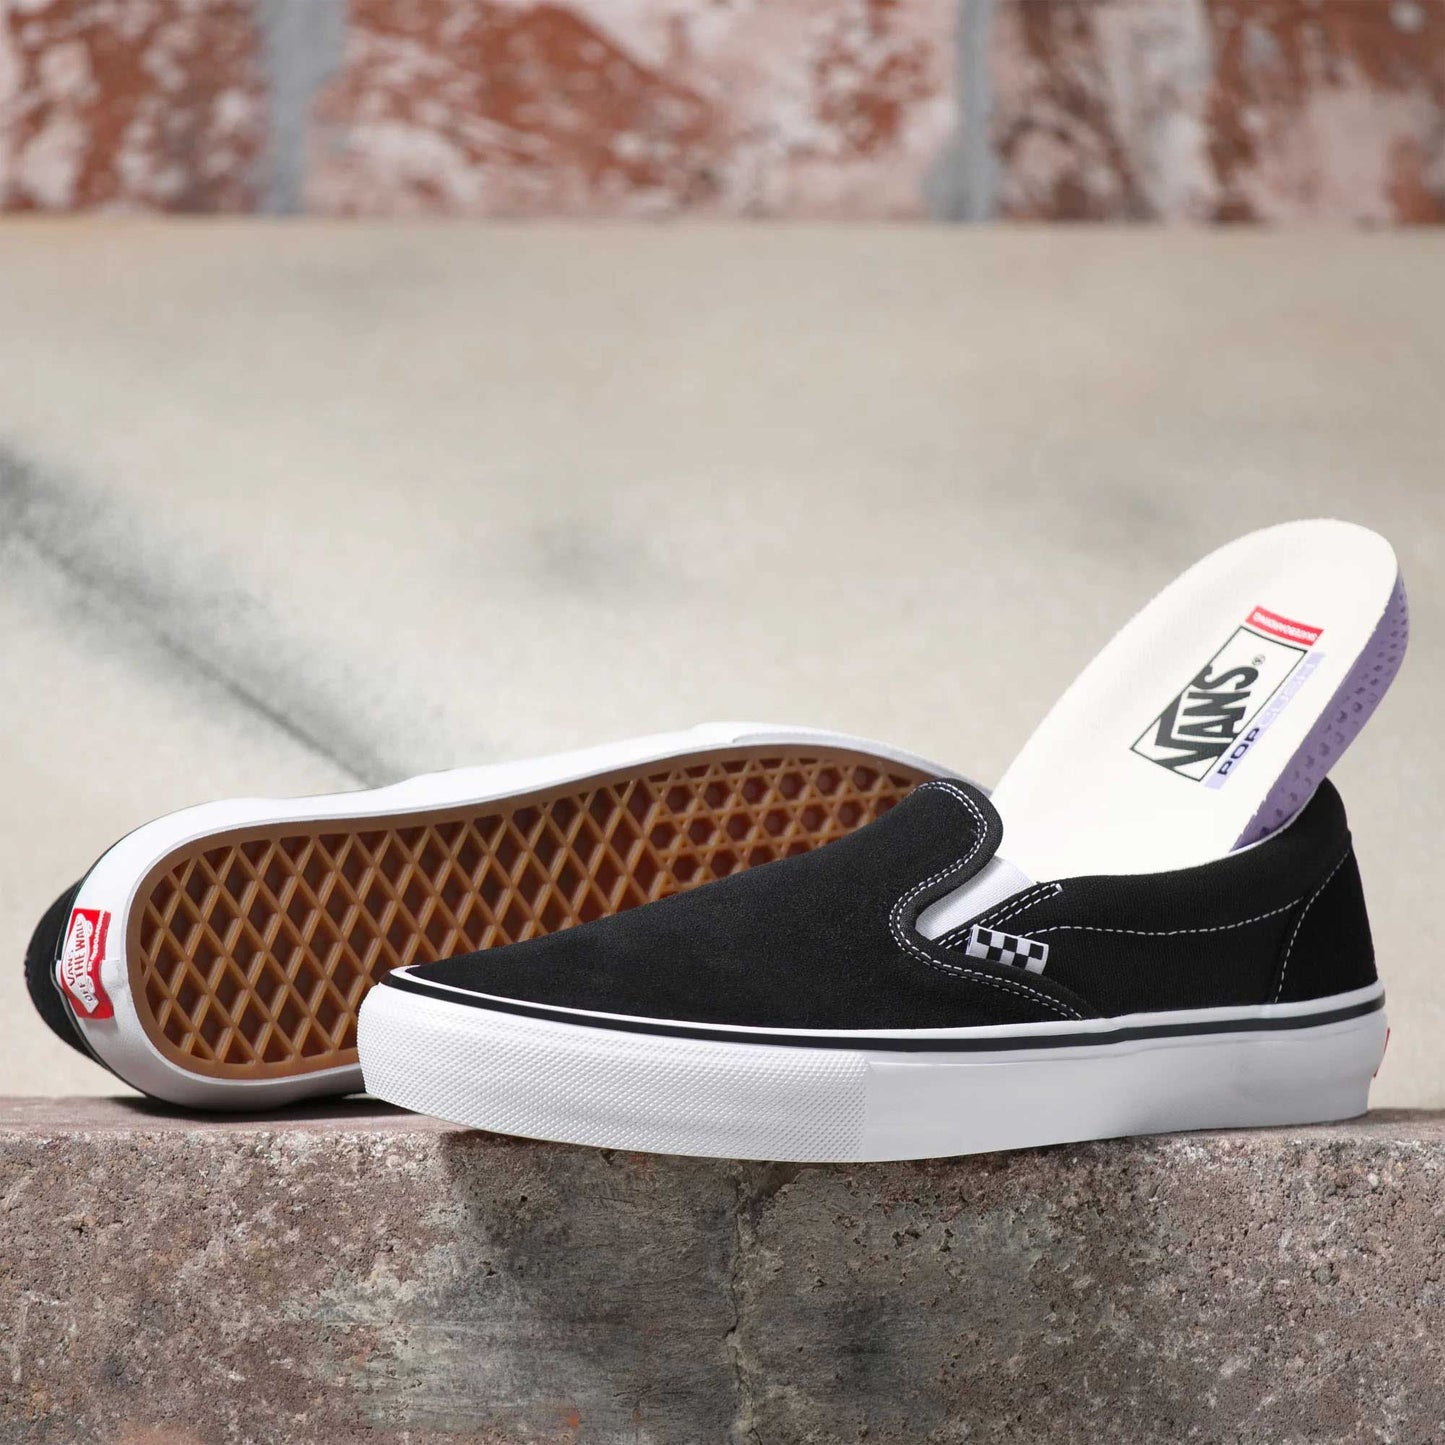 Vans Skate Slip-On, black/white - Tiki Room Skateboards - 2